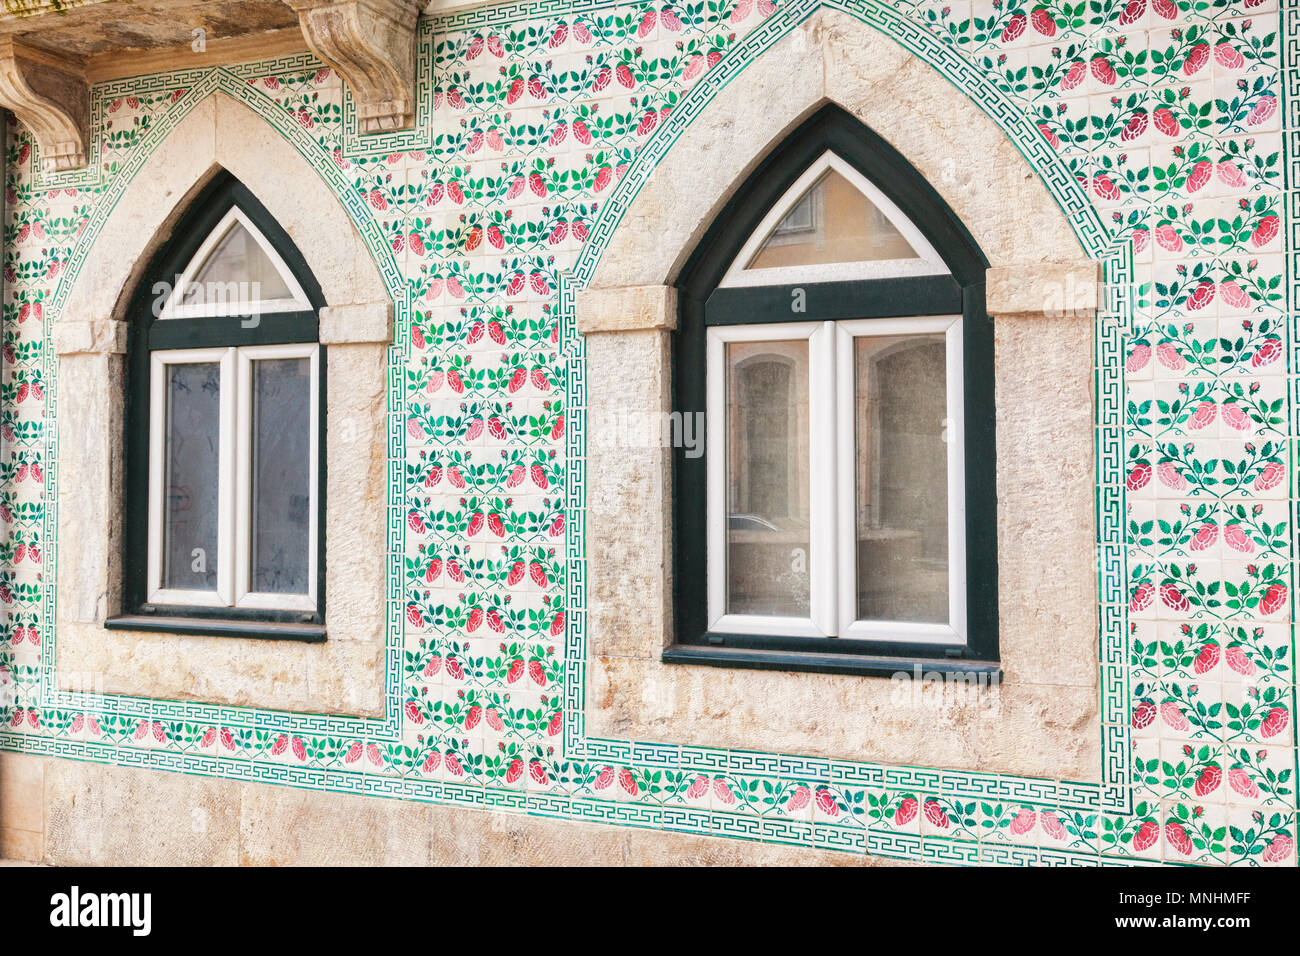 Vom 7. März 2018: Lissabon, Portugal Rundbogenfenster und Keramikfliesen dekorieren in einem alten Gebäude im Stadtteil Alfama. Stockfoto